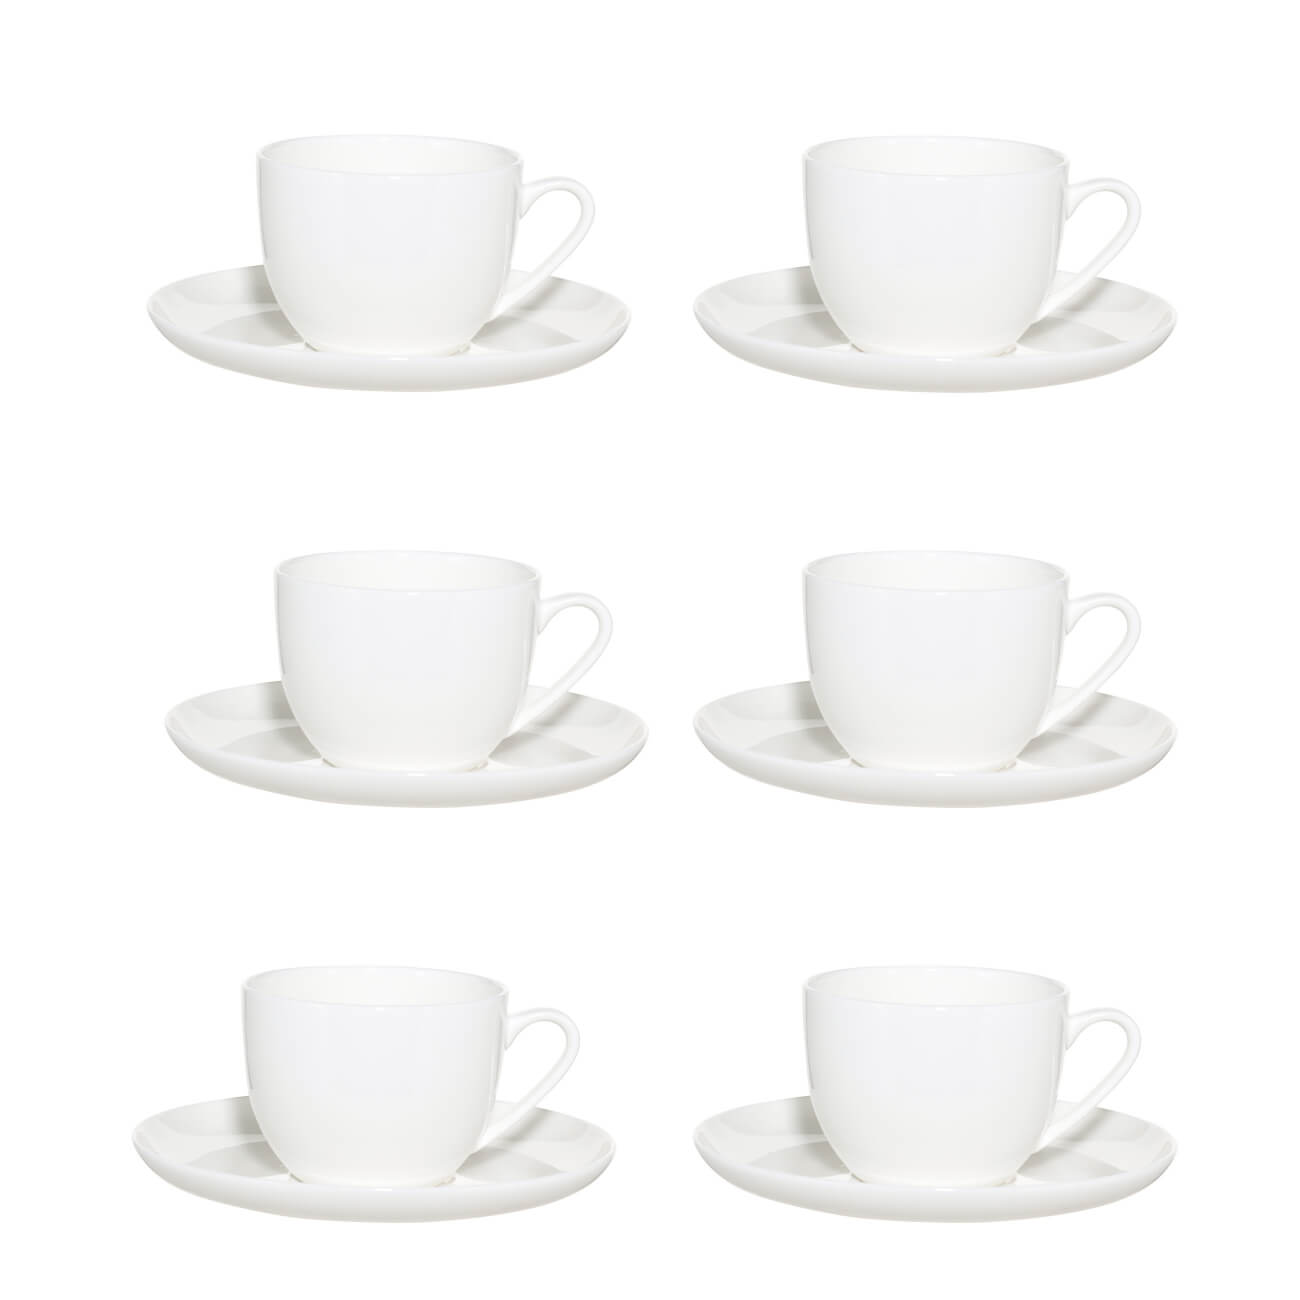 Пара чайная, 6 перс, 12 пр, 250 мл, фарфор F, белая, Ideal white чайная пара gipfel christmas фарфор белый с красным чашка 250 мл блюдце 14 см